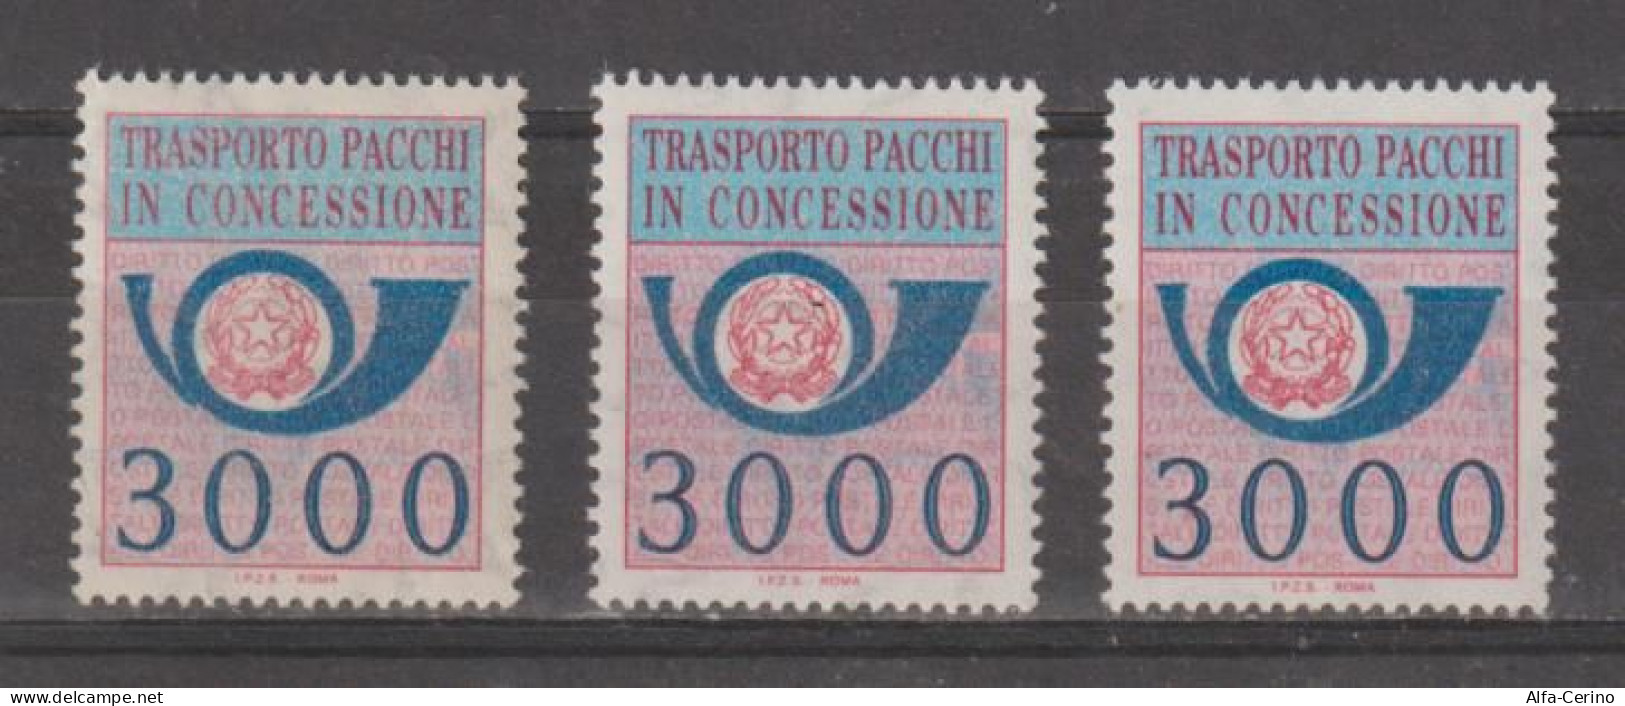 REPUBBLICA:  1984  PACCHI  IN  CONCESSIONE  -  £. 3000  AZZURRO  E  ROSA  LILLA  RIPETUTO  3  N. -  SASS. 22 - Colis-concession